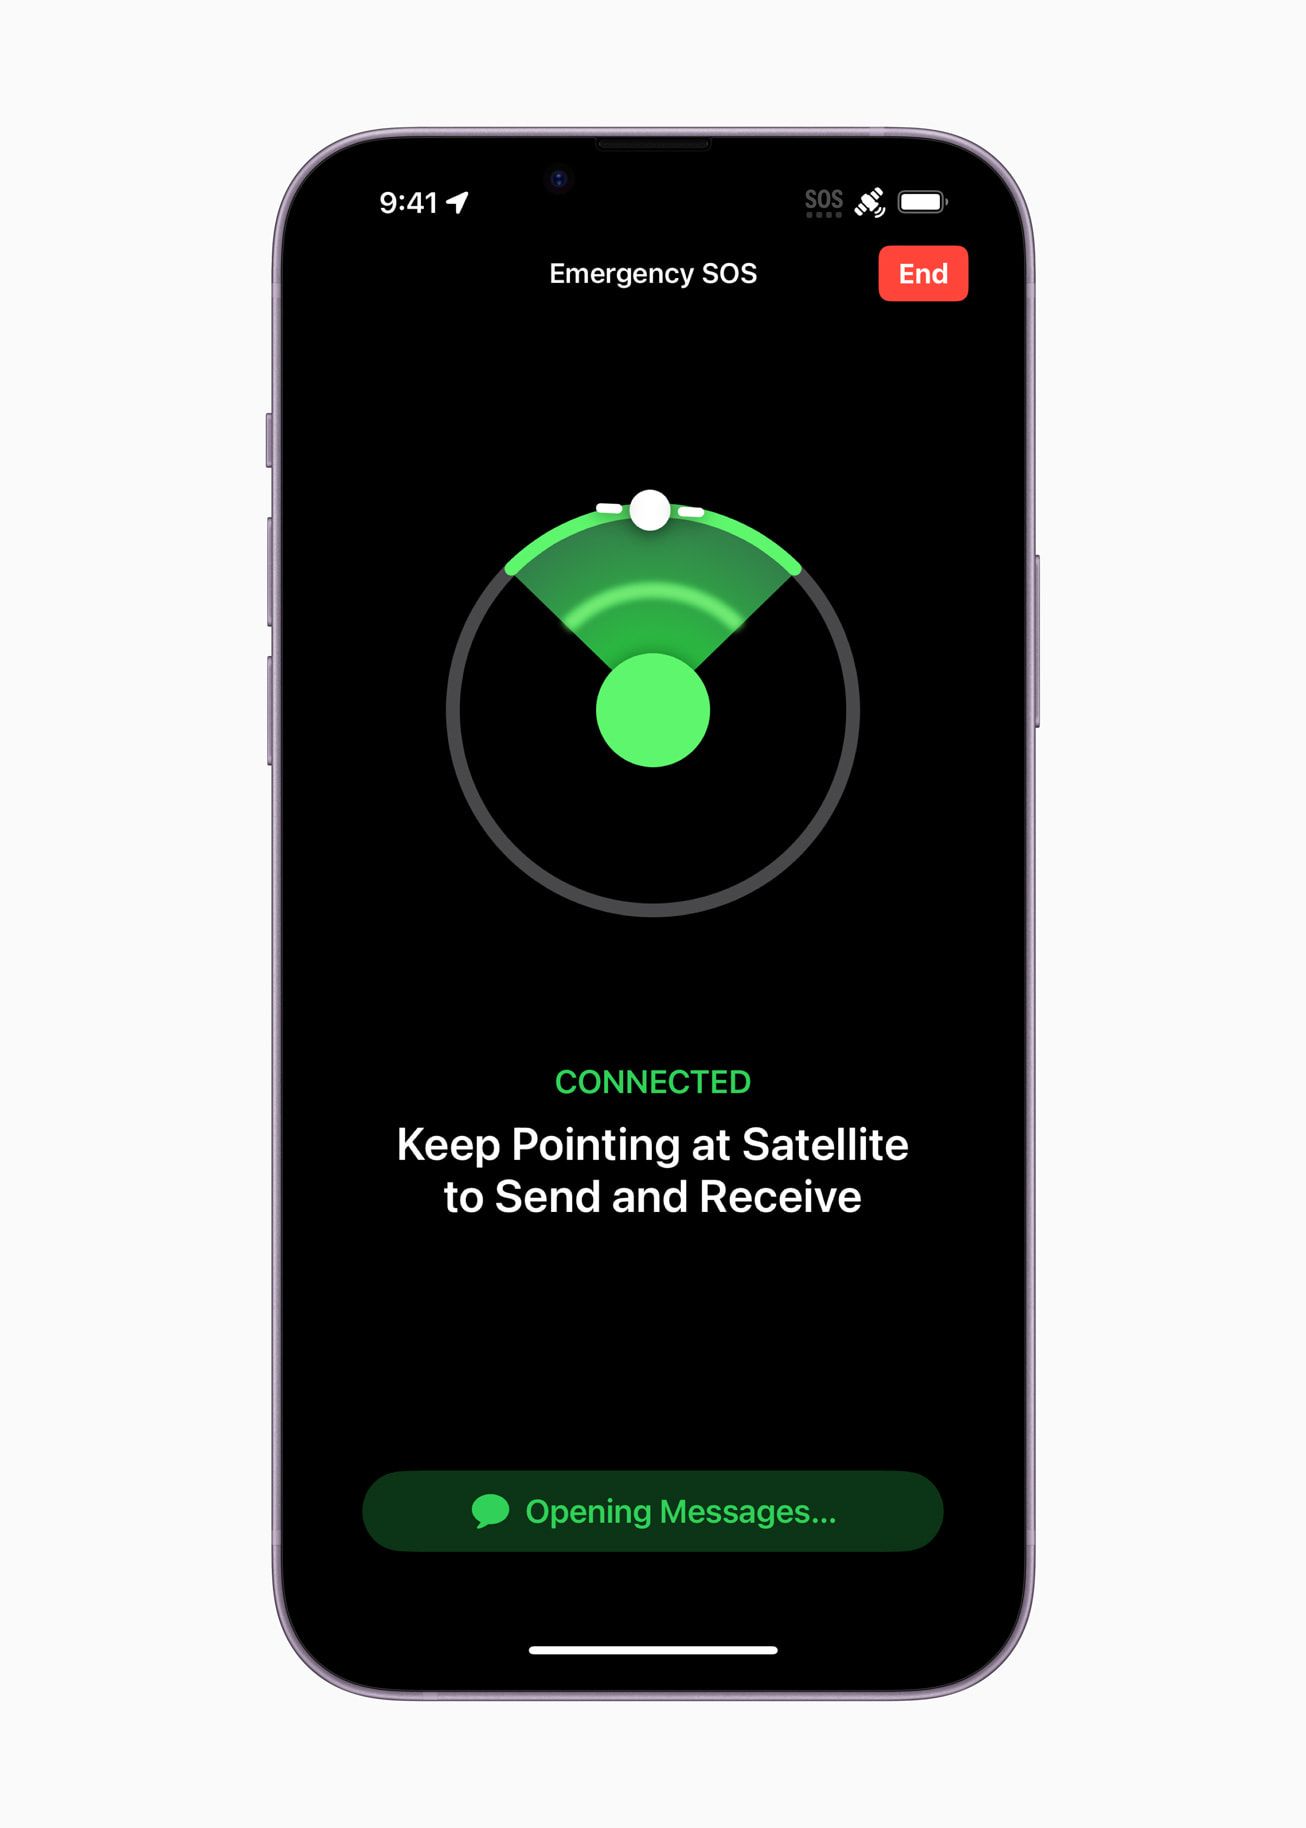 Siga as instruções na tela do seu iPhone para conectar-se a um satélite